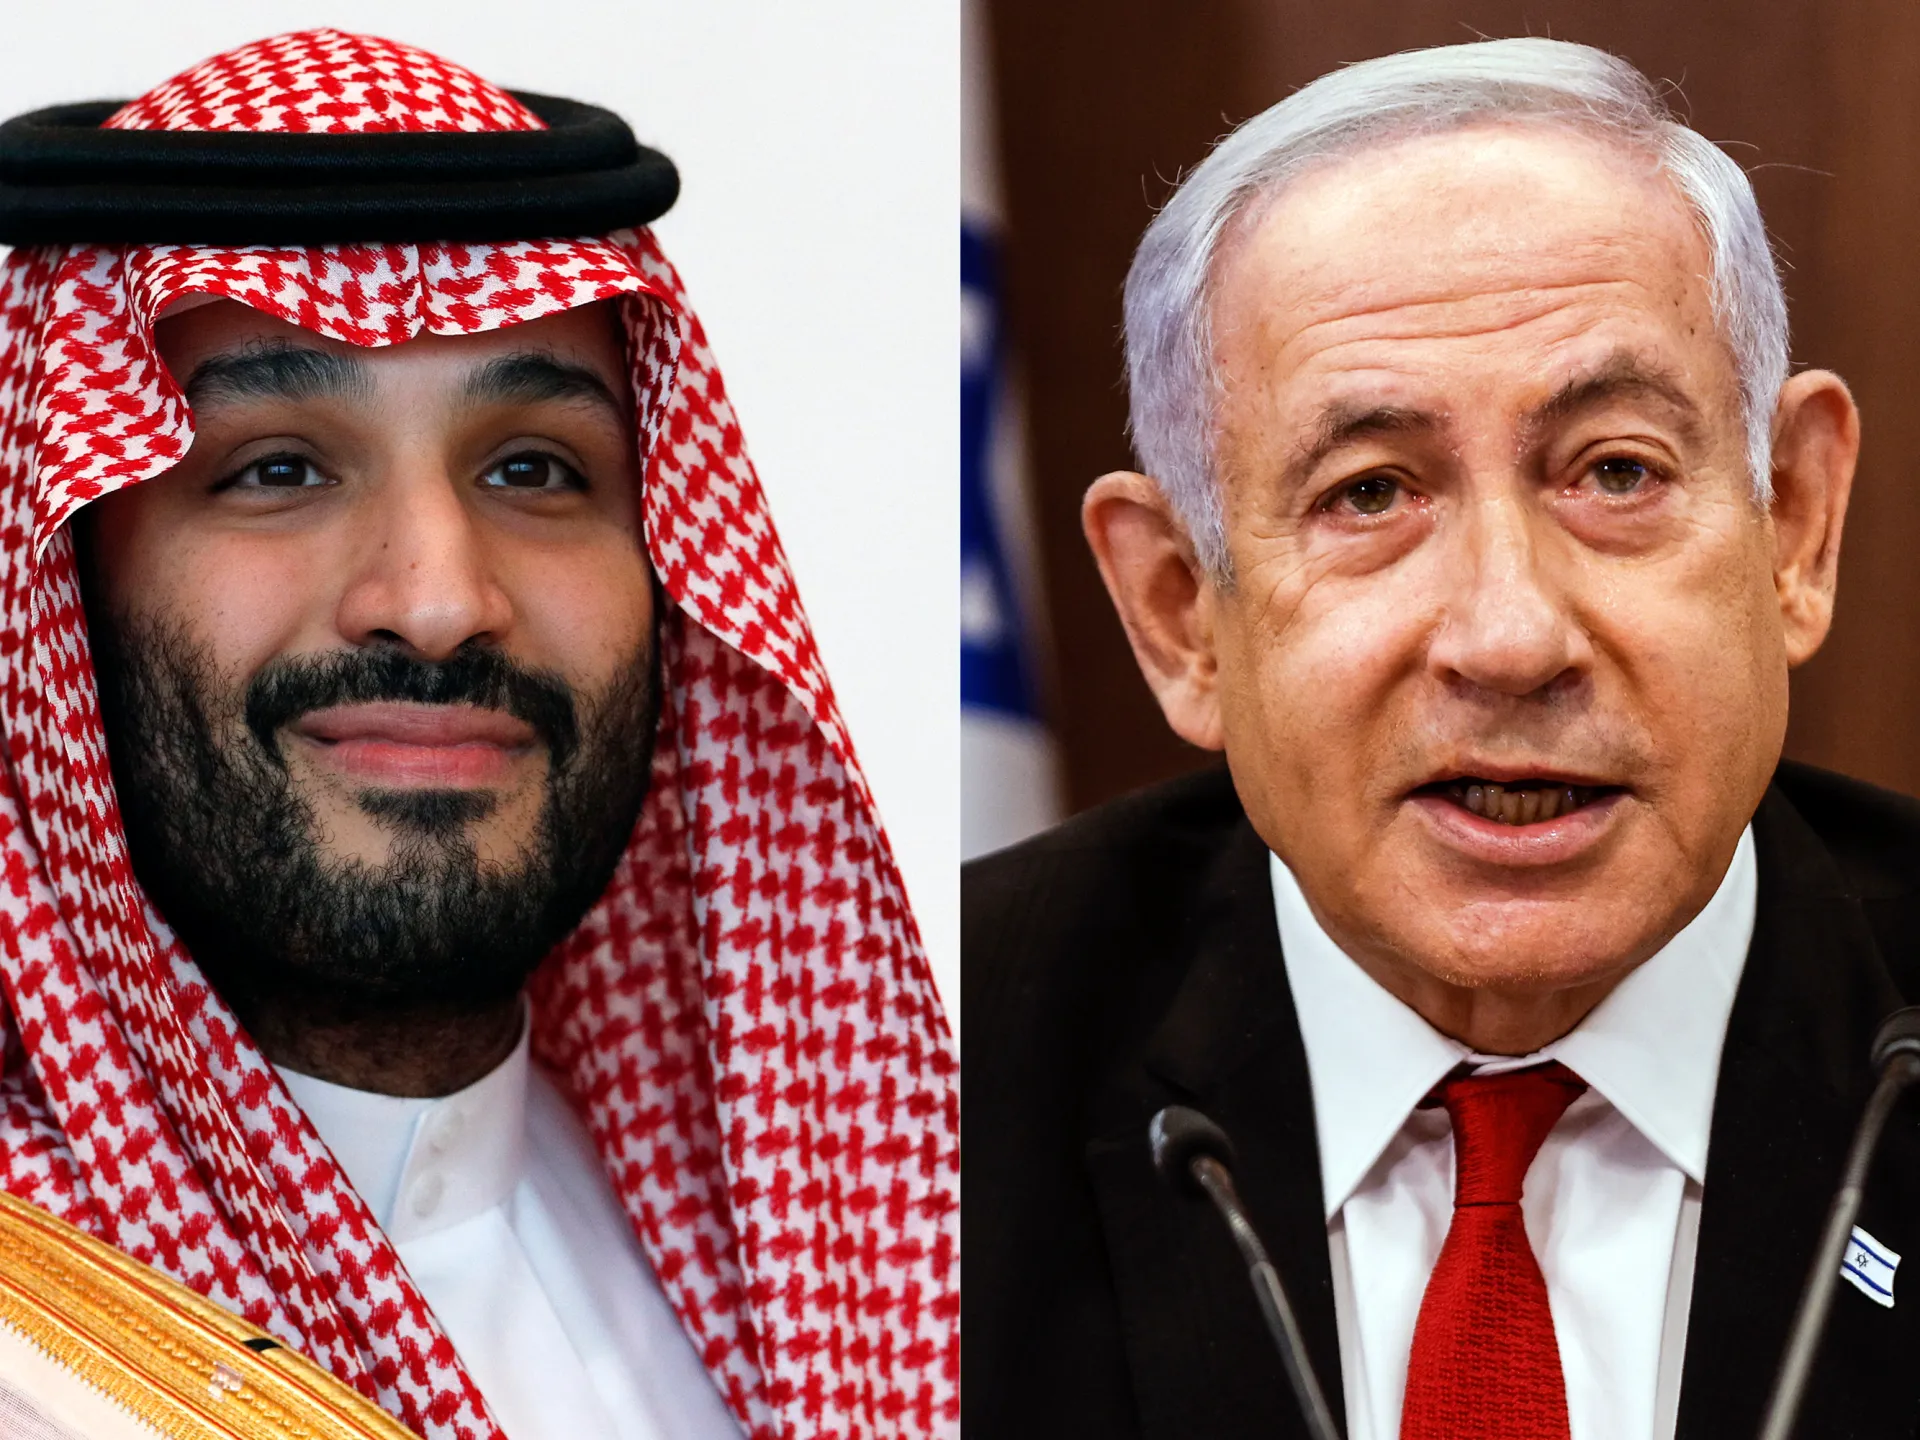 Saudi Arabia may be open to befriending Israel